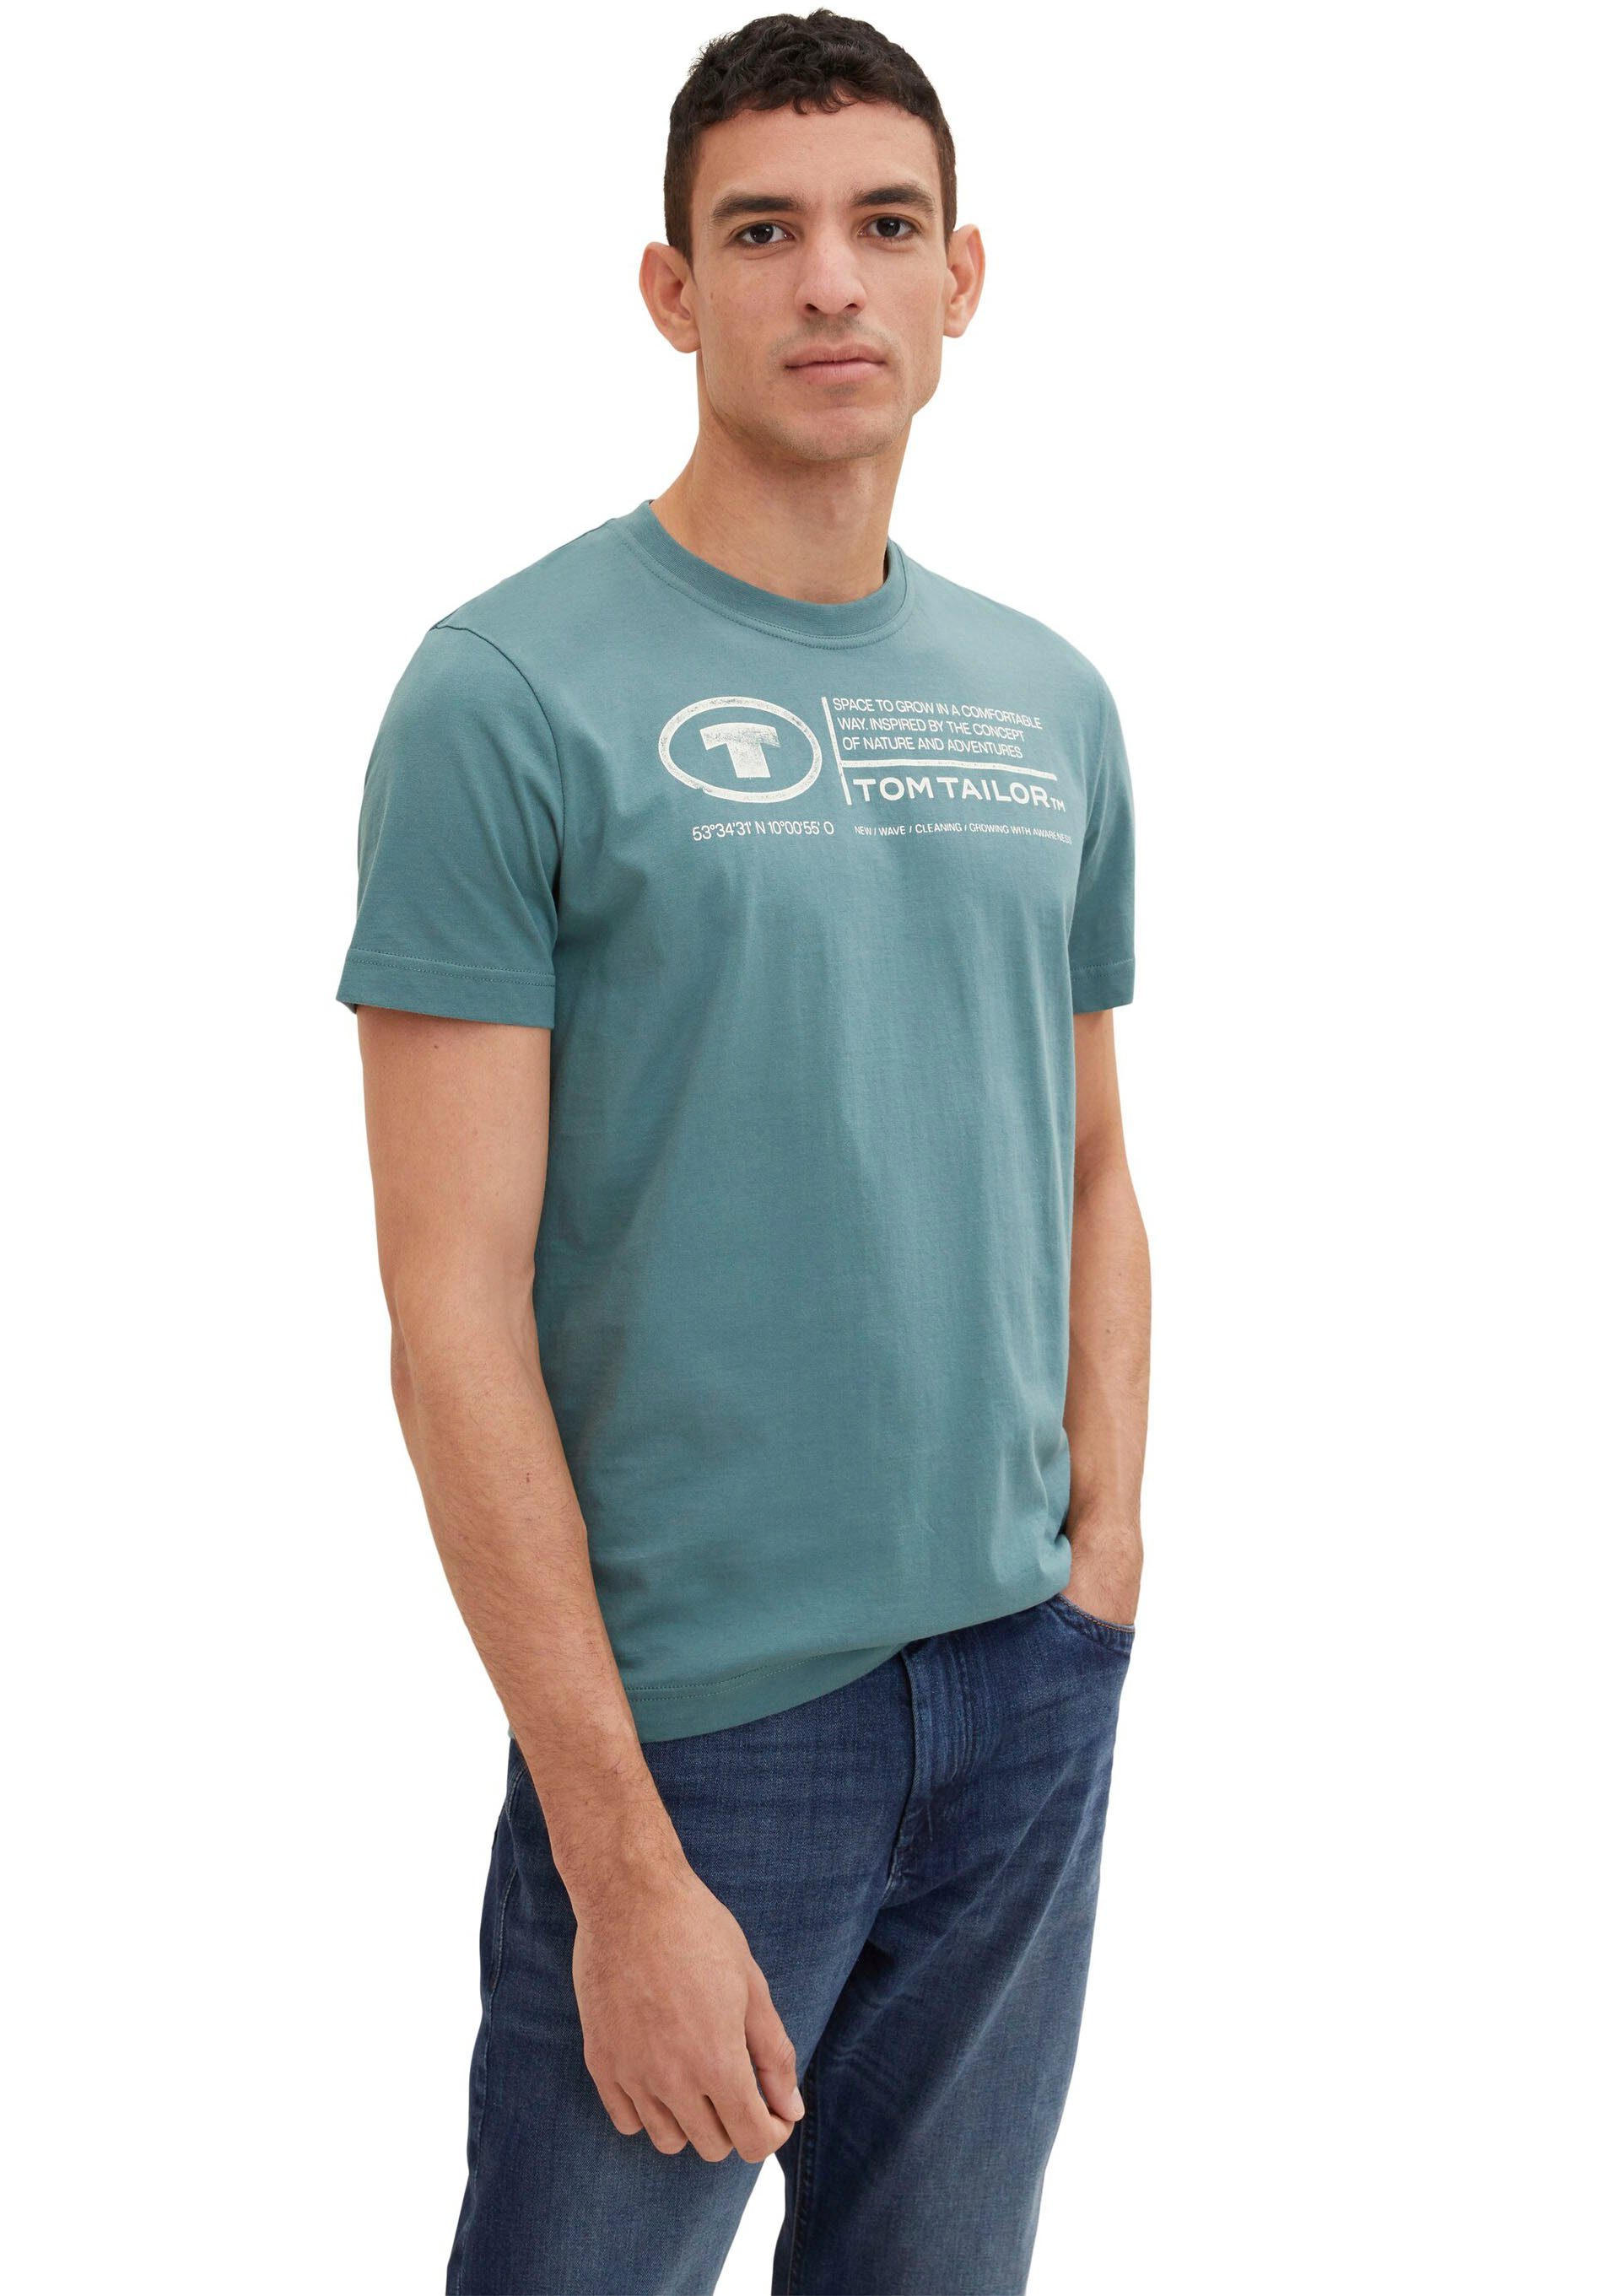 Frontprint Print-Shirt Tailor T-Shirt deep TOM Tom Herren bluis TAILOR